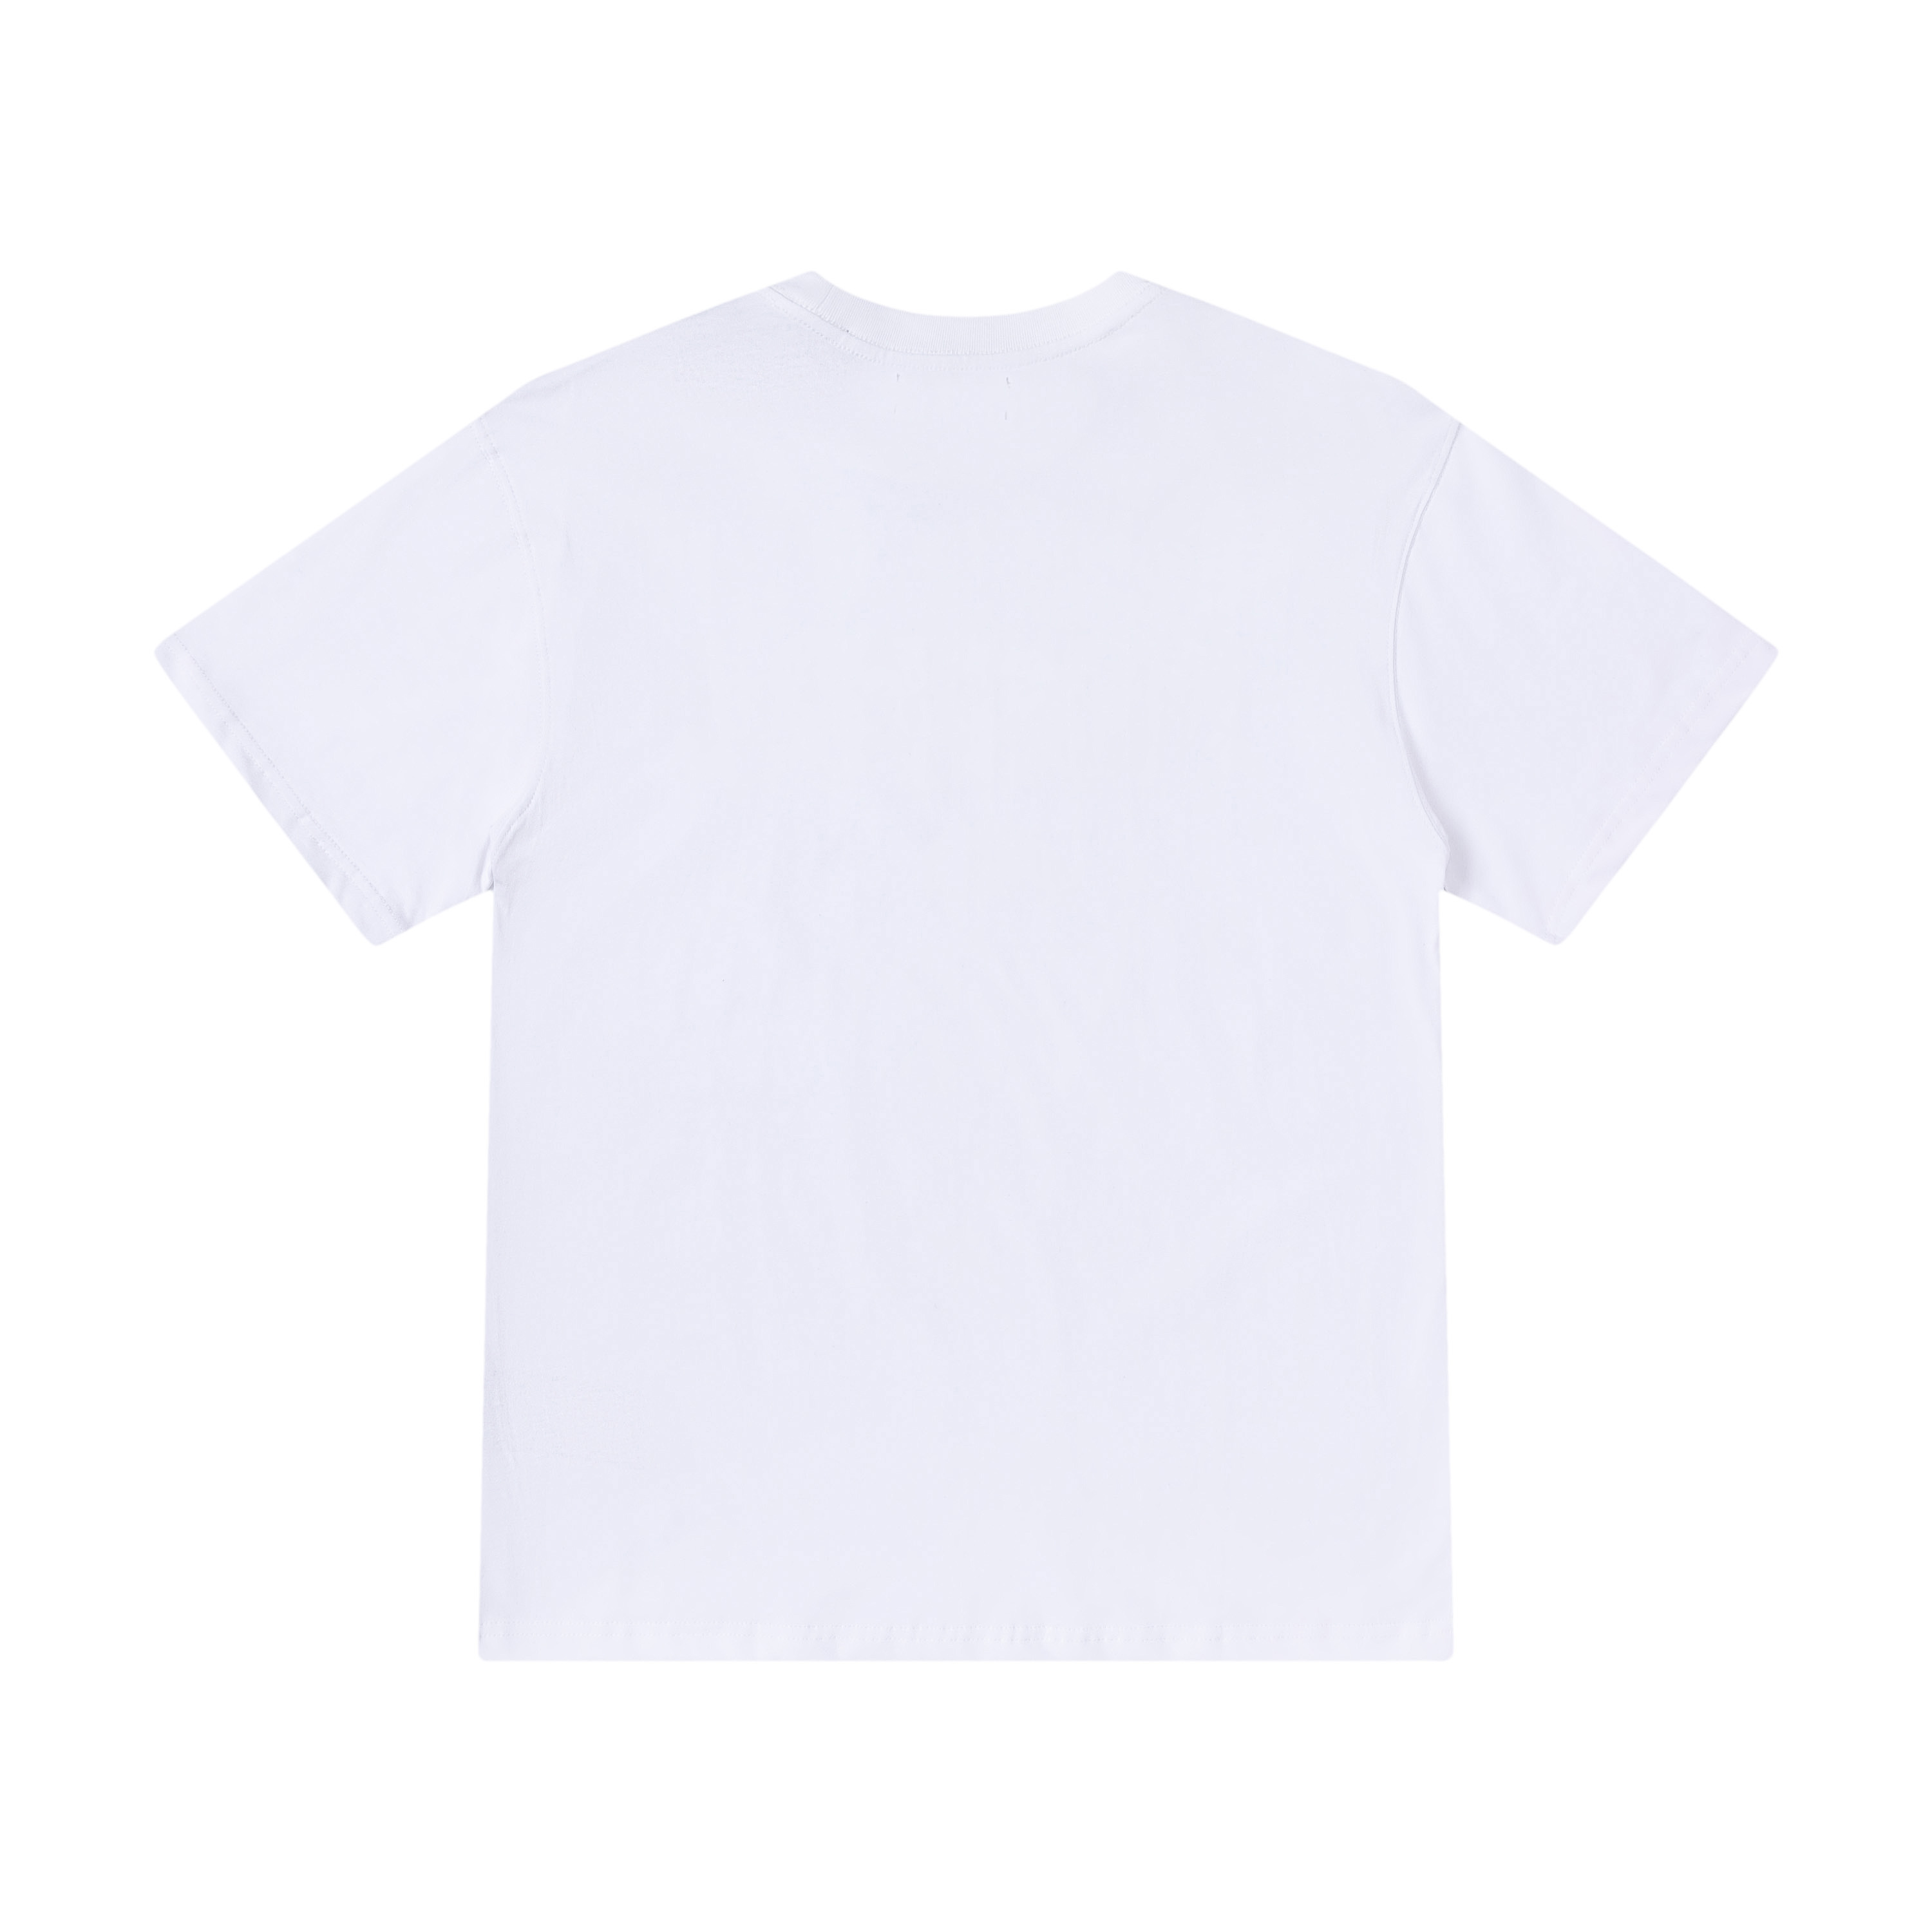 AMIRI お買い得大人気 tシャツ 00300-act偽物 柔らかい プリント 純綿 ファッション トップス  短袖 メンズ 2色可選_5